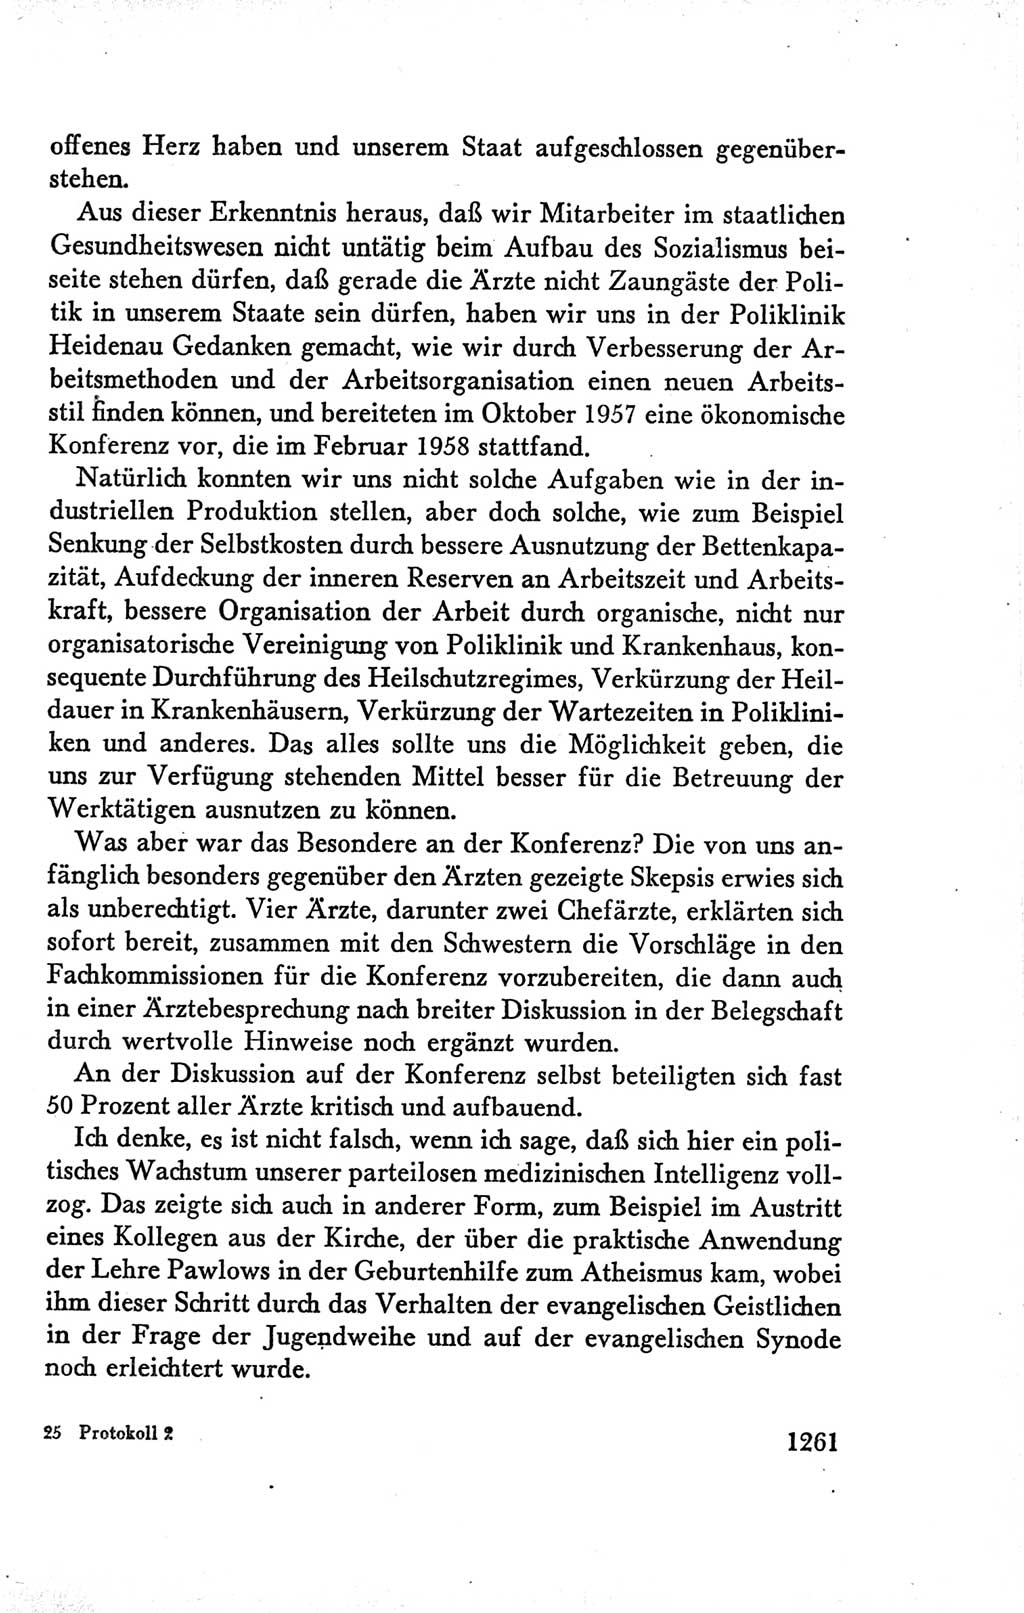 Protokoll der Verhandlungen des Ⅴ. Parteitages der Sozialistischen Einheitspartei Deutschlands (SED) [Deutsche Demokratische Republik (DDR)] 1958, Seite 1261